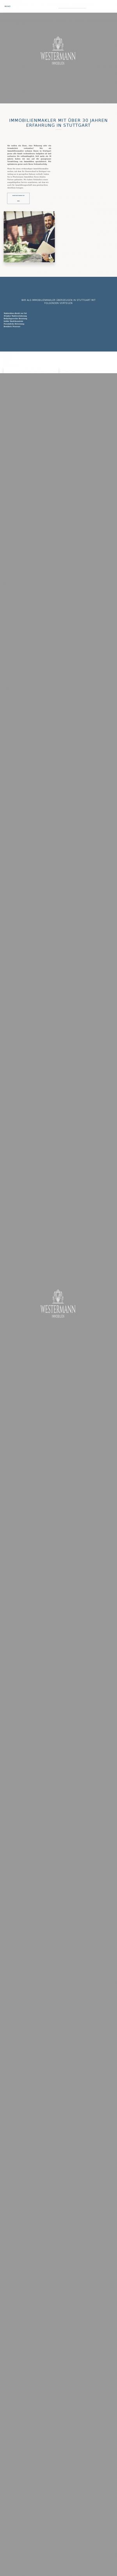 www.westermann-immobilien.de